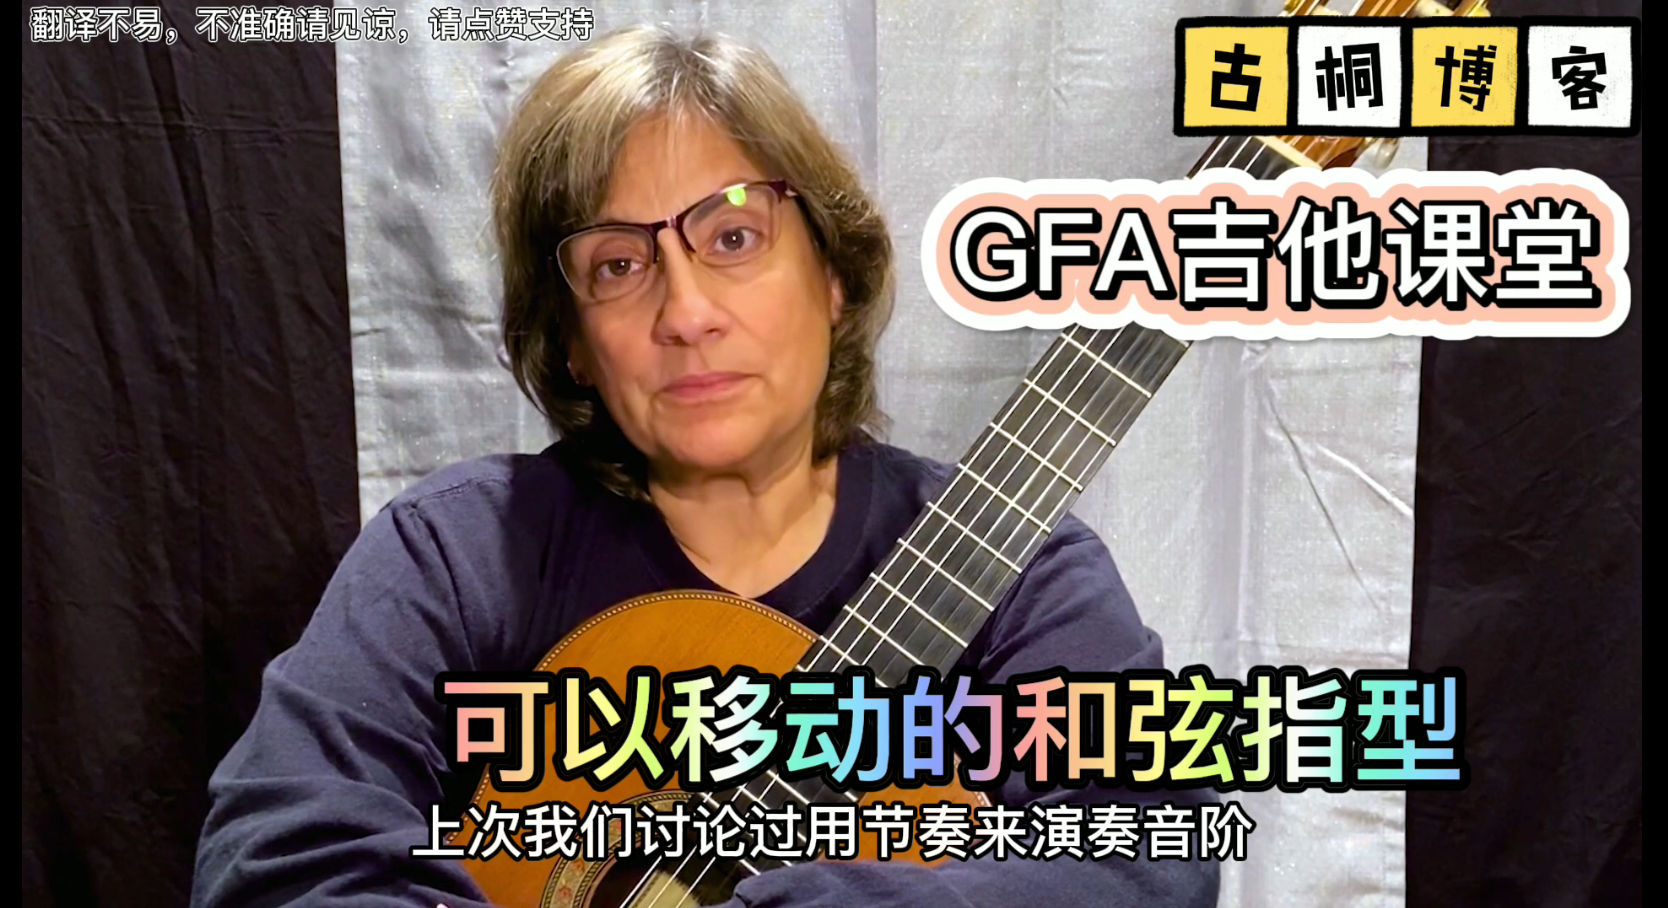 GFA吉他课堂| CAGED系统解析-2 可以移动的和弦指型《中文字幕》-古桐博客